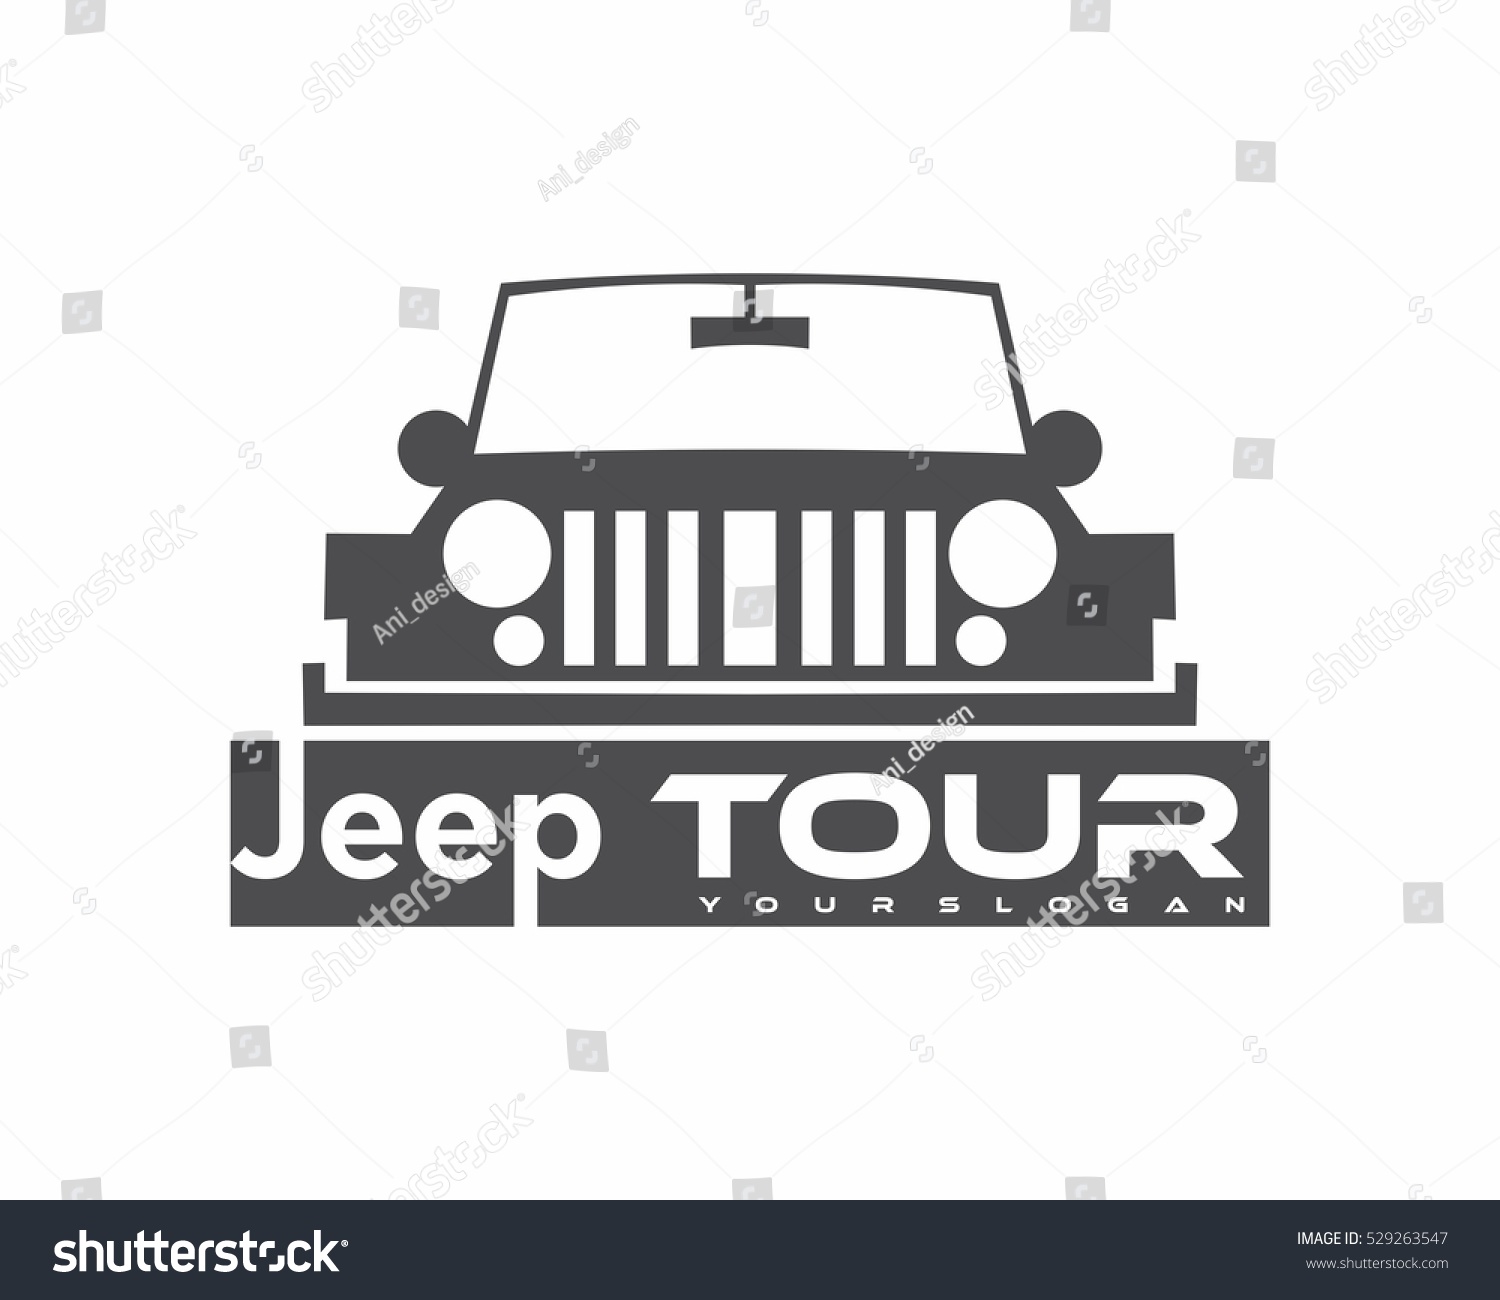 SVG of Jeep tour svg